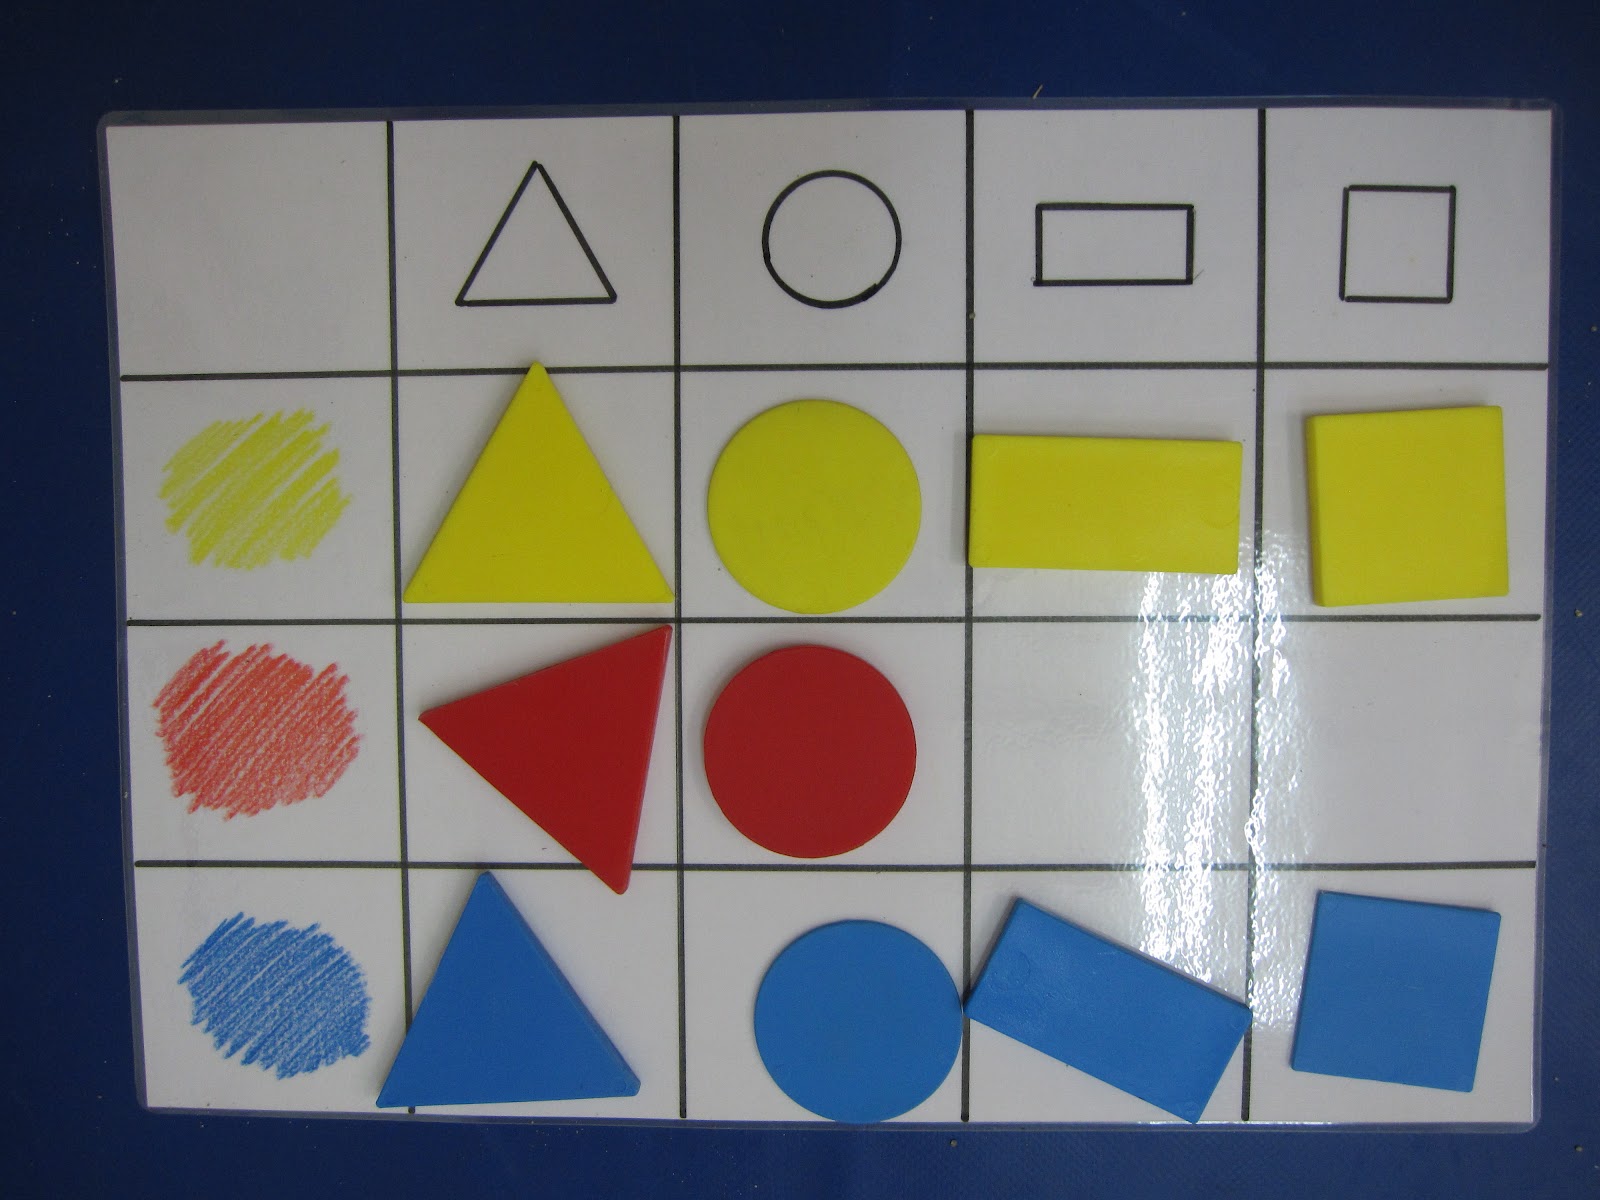 La imagen muestra una lámina con una tabla de doble entrada. En la parte superior hay dibujadas formas geométricas y en la columna de la izquierda colores. Los cuadros interiores se completan con bloques lógicos